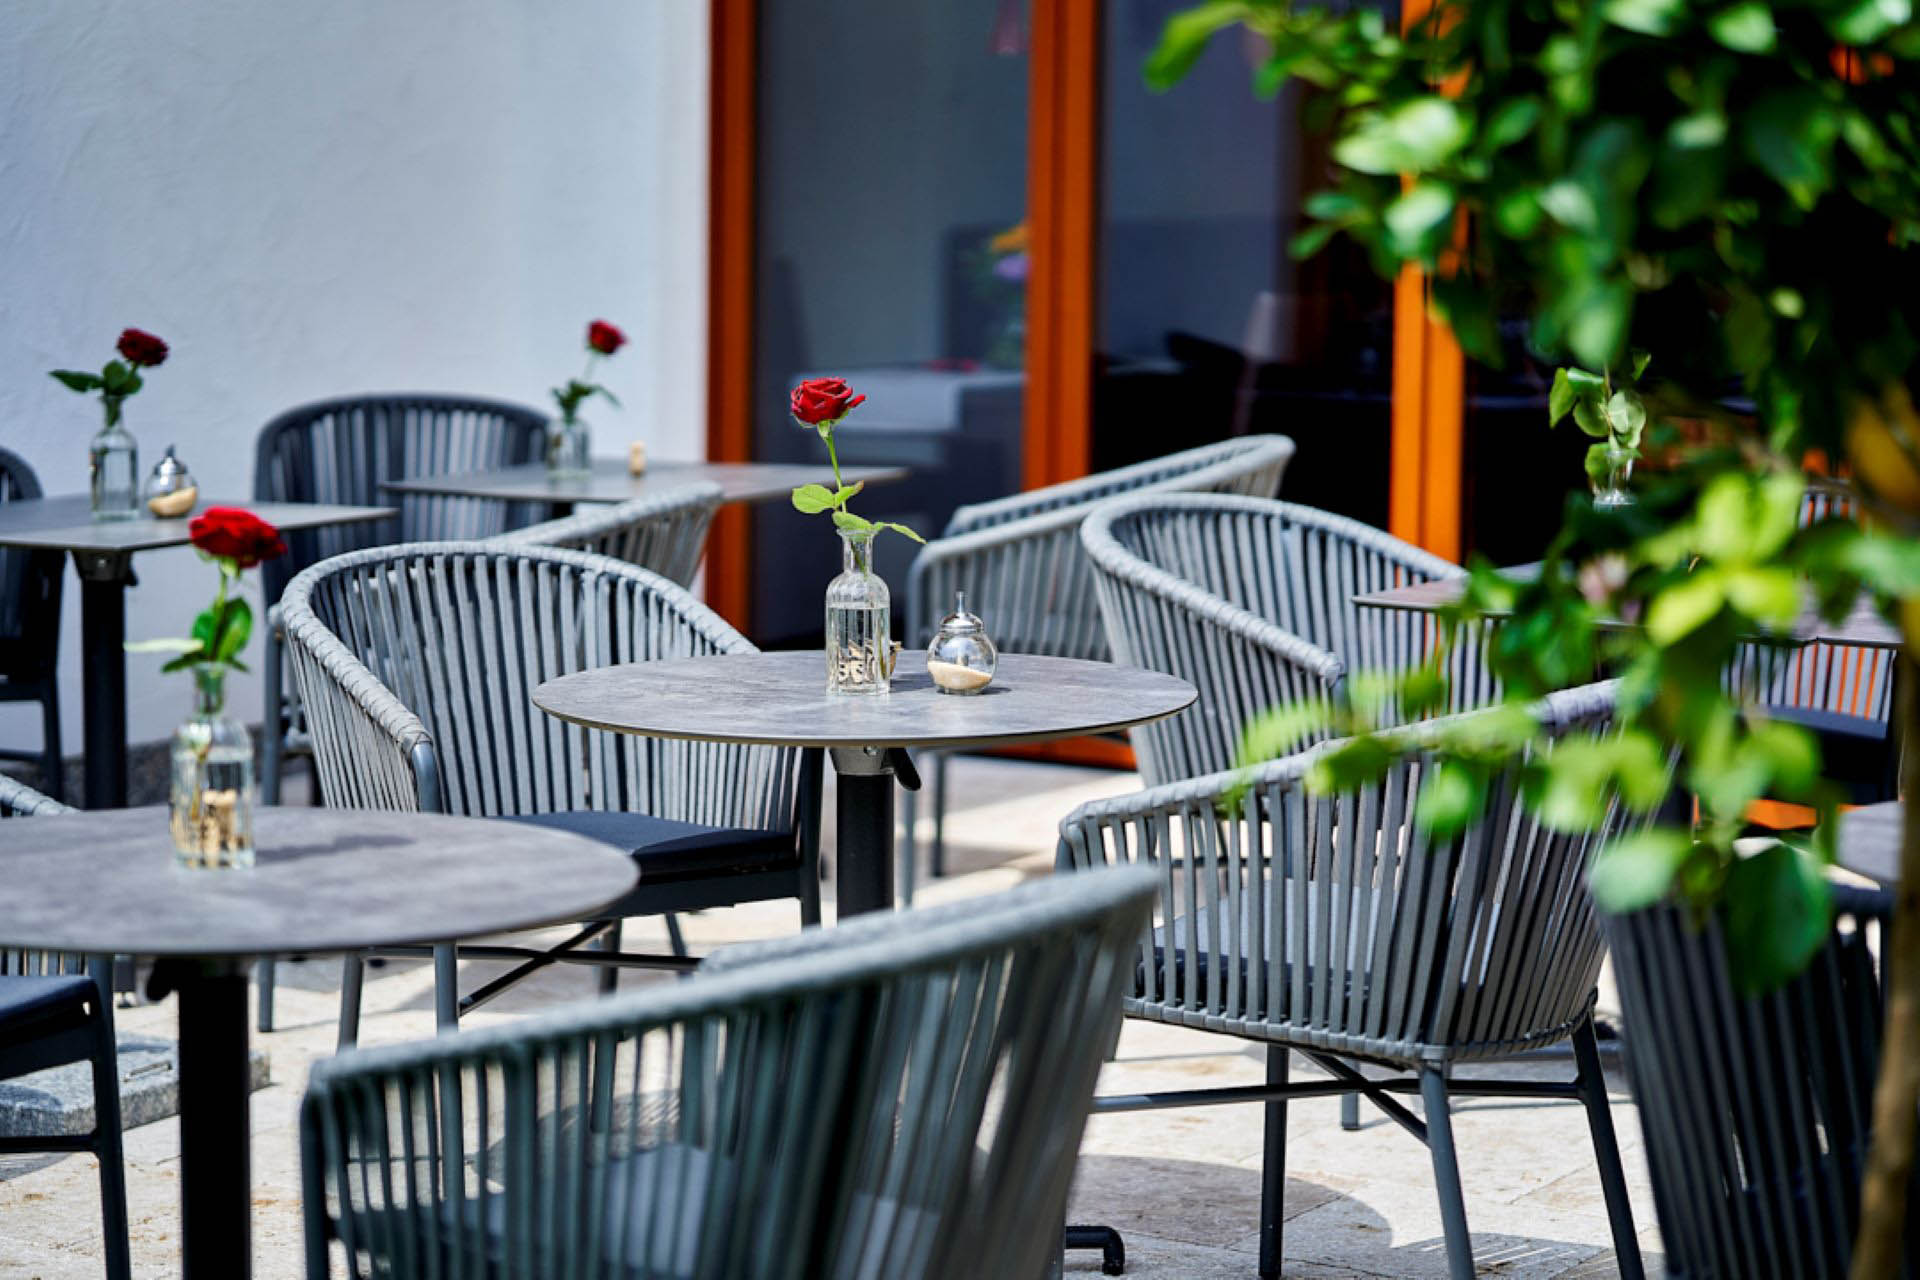 Café Kaffeesatz, Schoenau am Koenigssee, Terrasse mit Sitzmoebeln